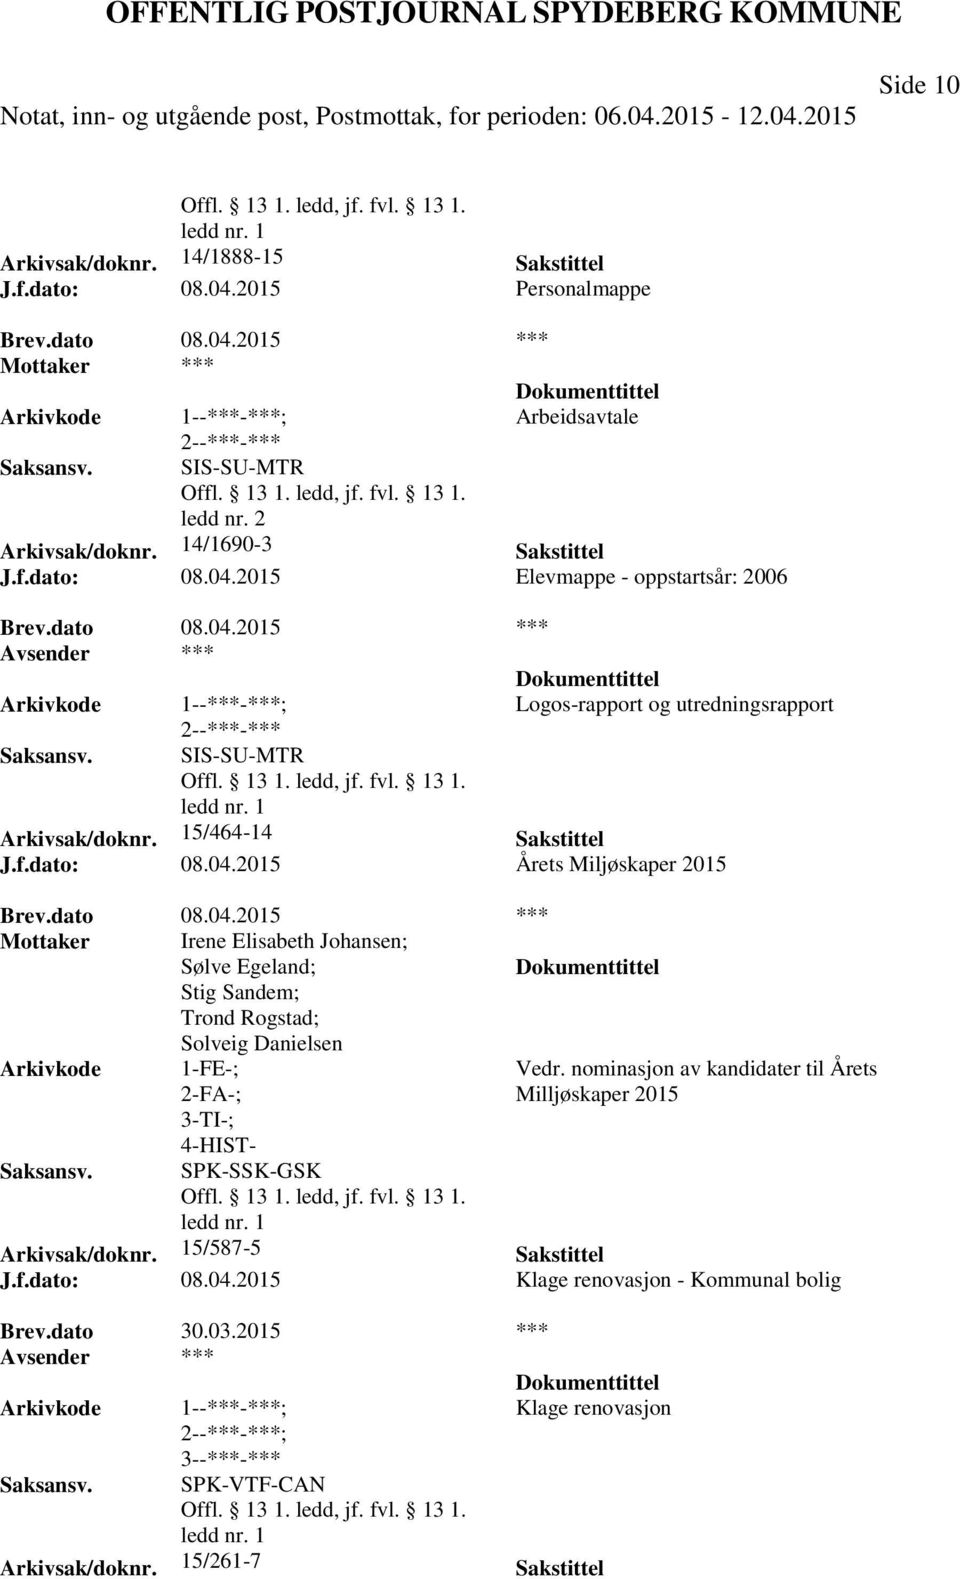 nominasjon av kandidater til Årets Milljøskaper 2015 Arkivsak/doknr. 15/587-5 Sakstittel J.f.dato: 08.04.2015 Klage renovasjon - Kommunal bolig Brev.dato 30.03.